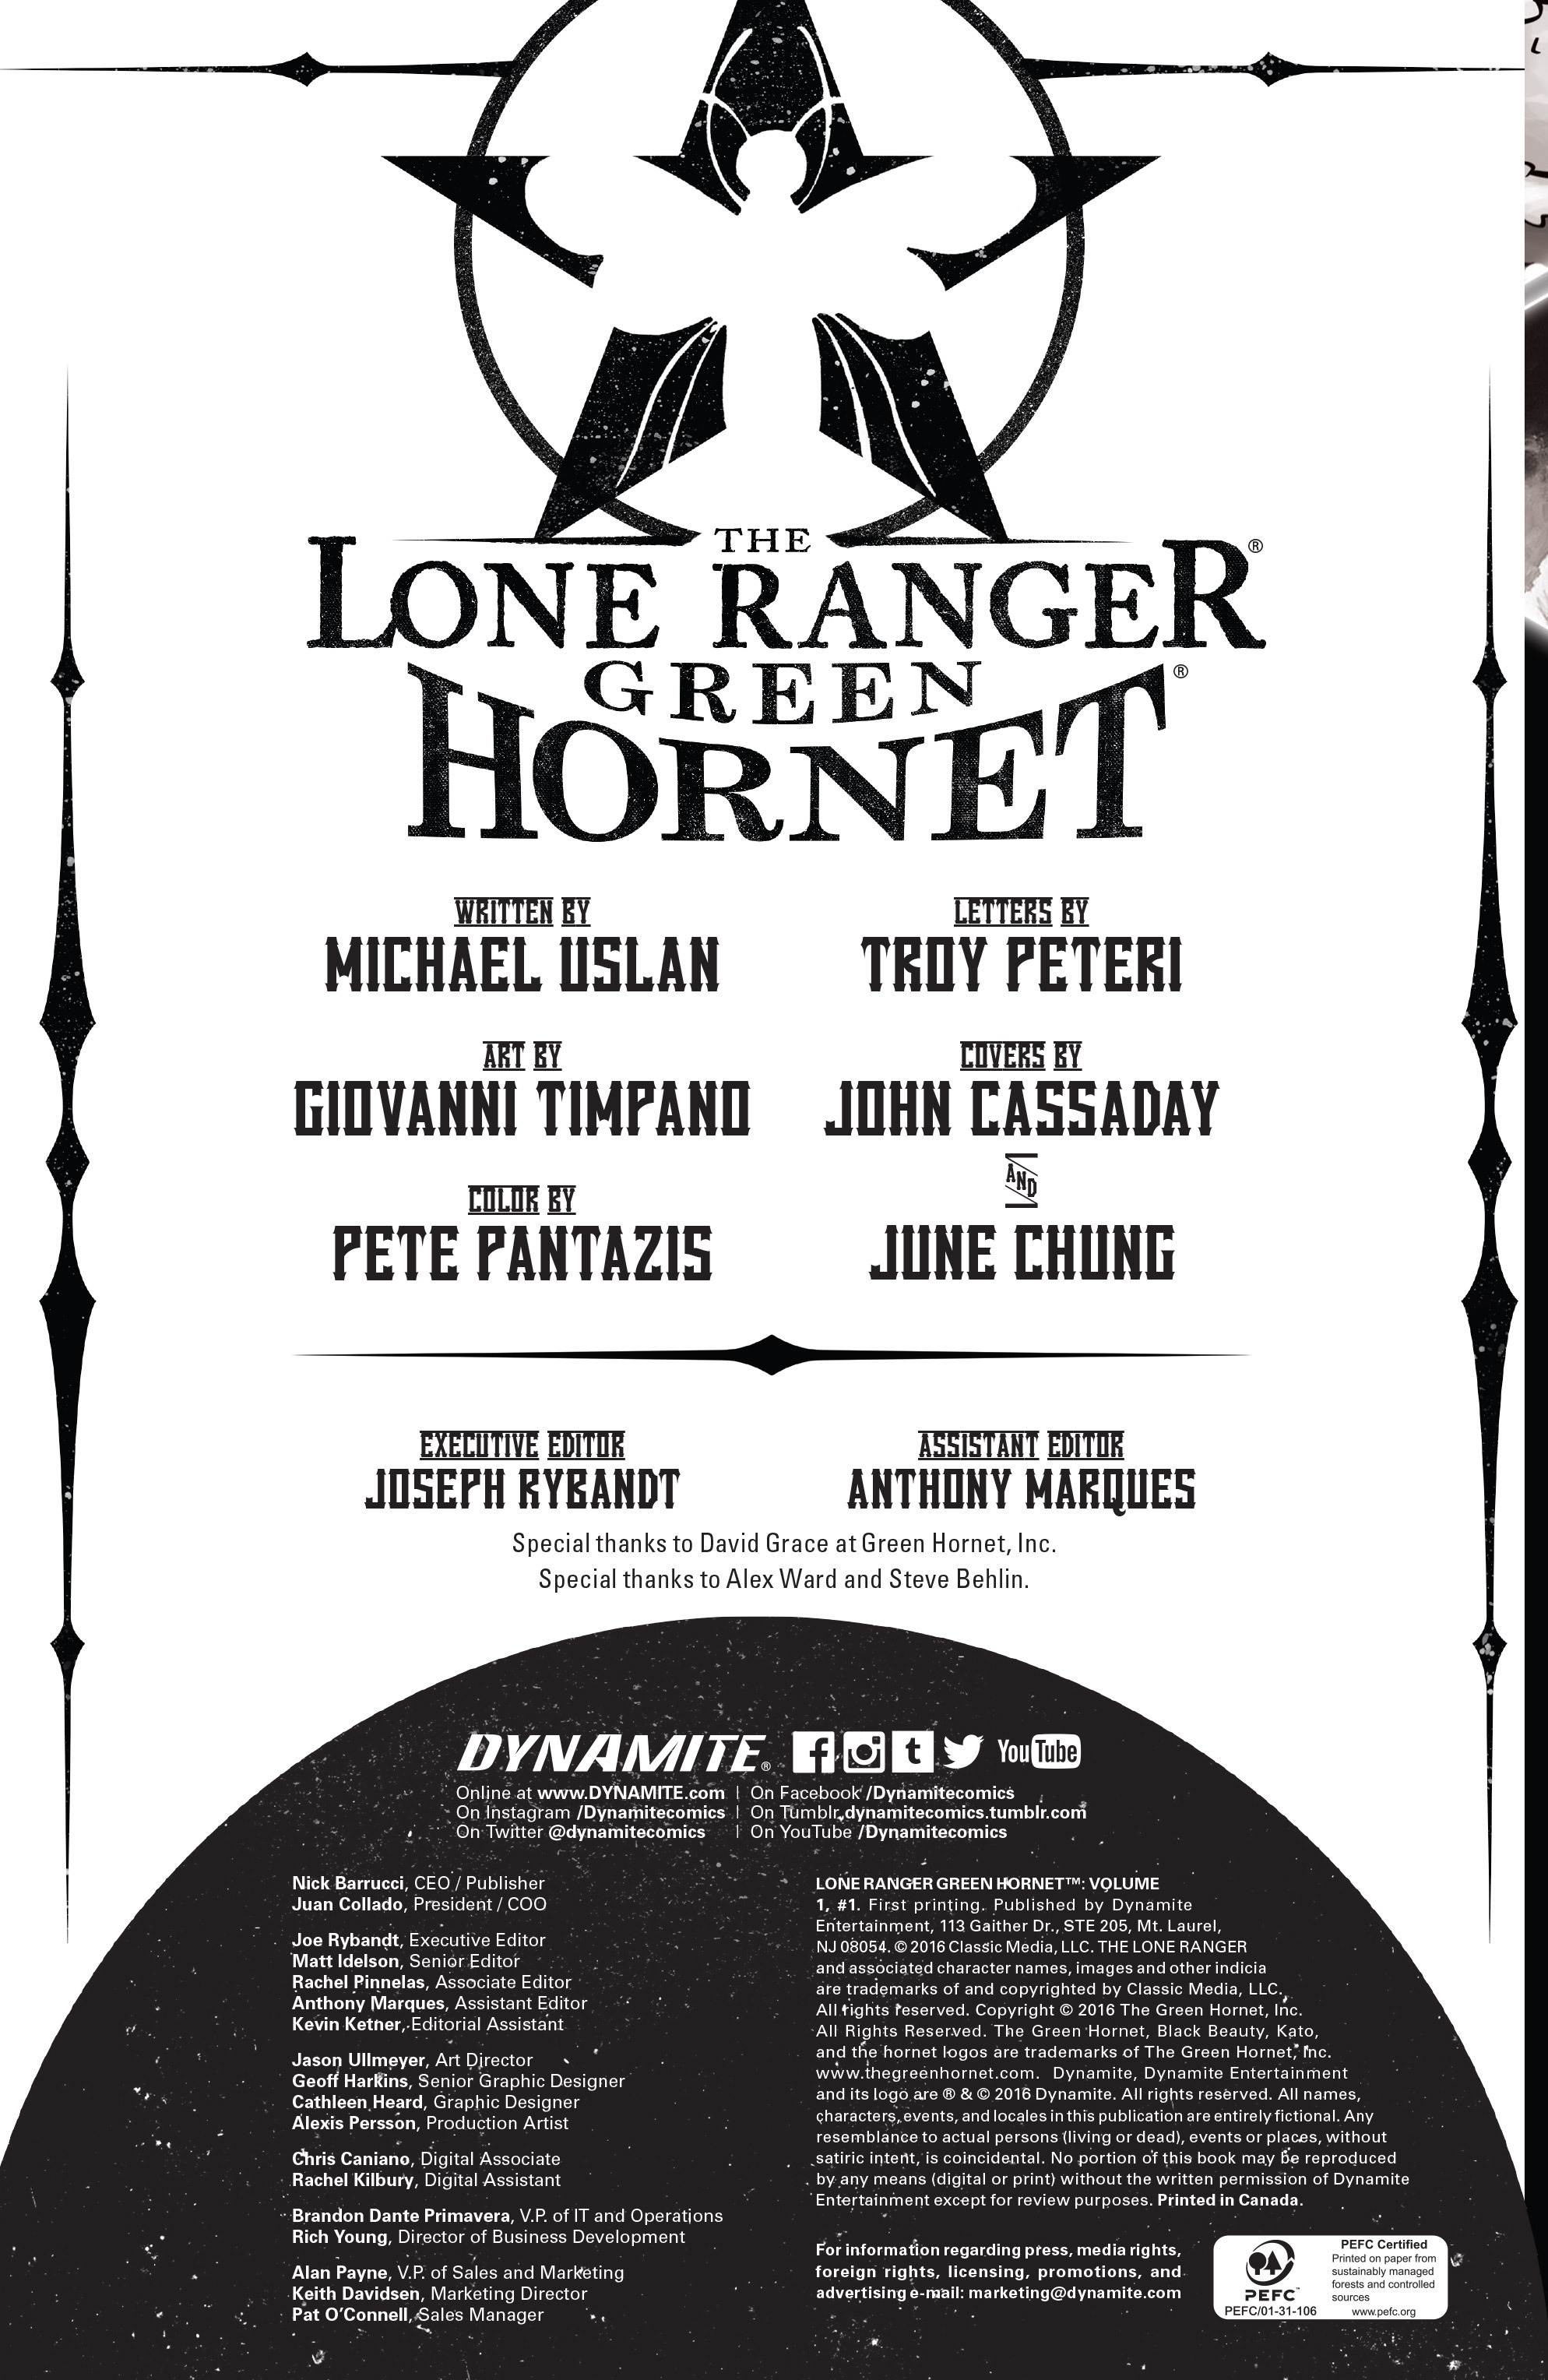 Read online The Lone Ranger/Green Hornet comic -  Issue #1 - 2